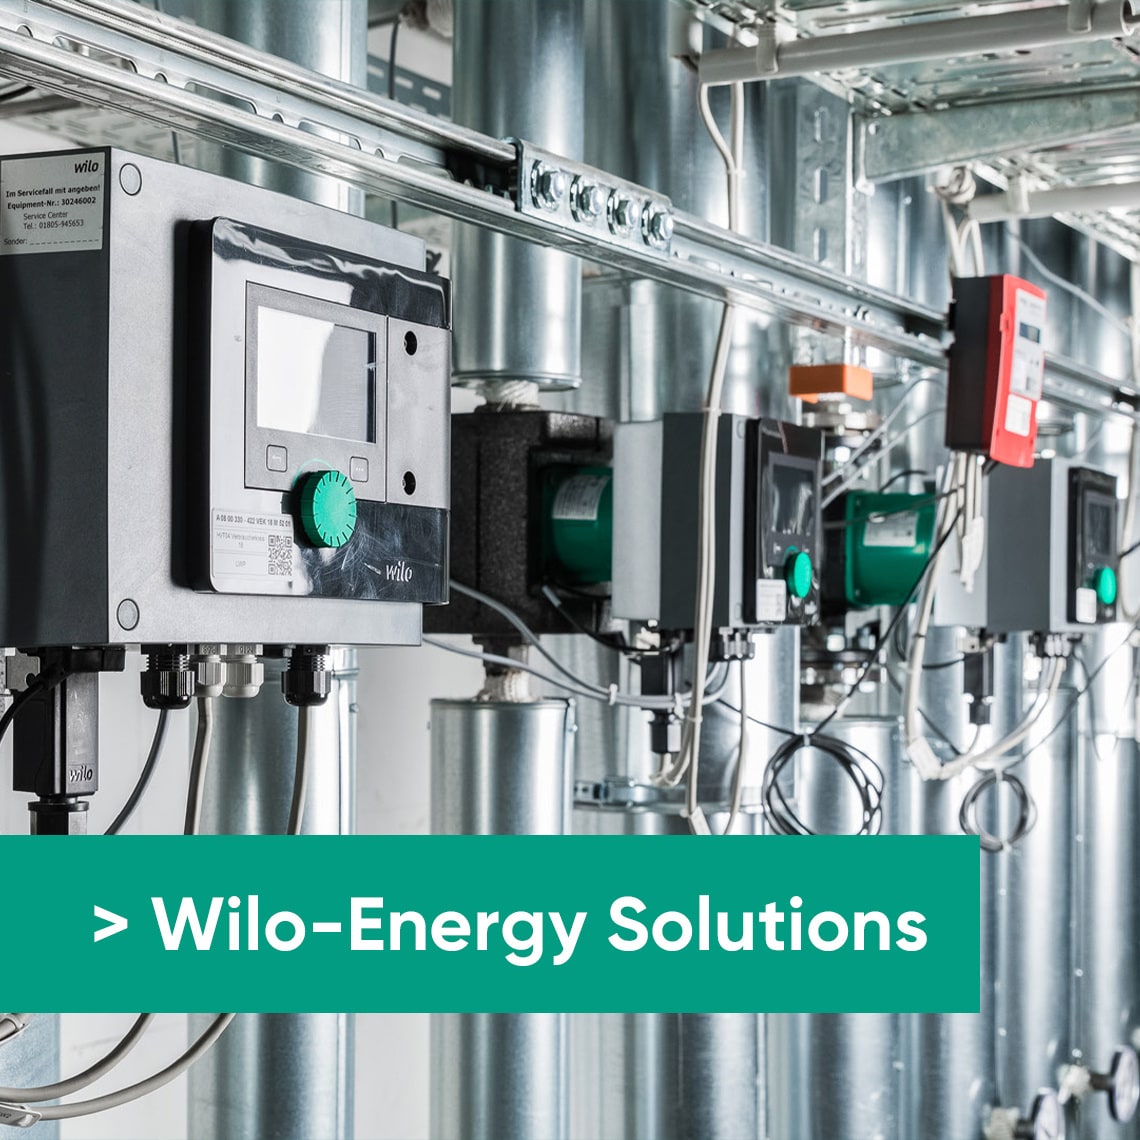 Wilo-Energy Solutions